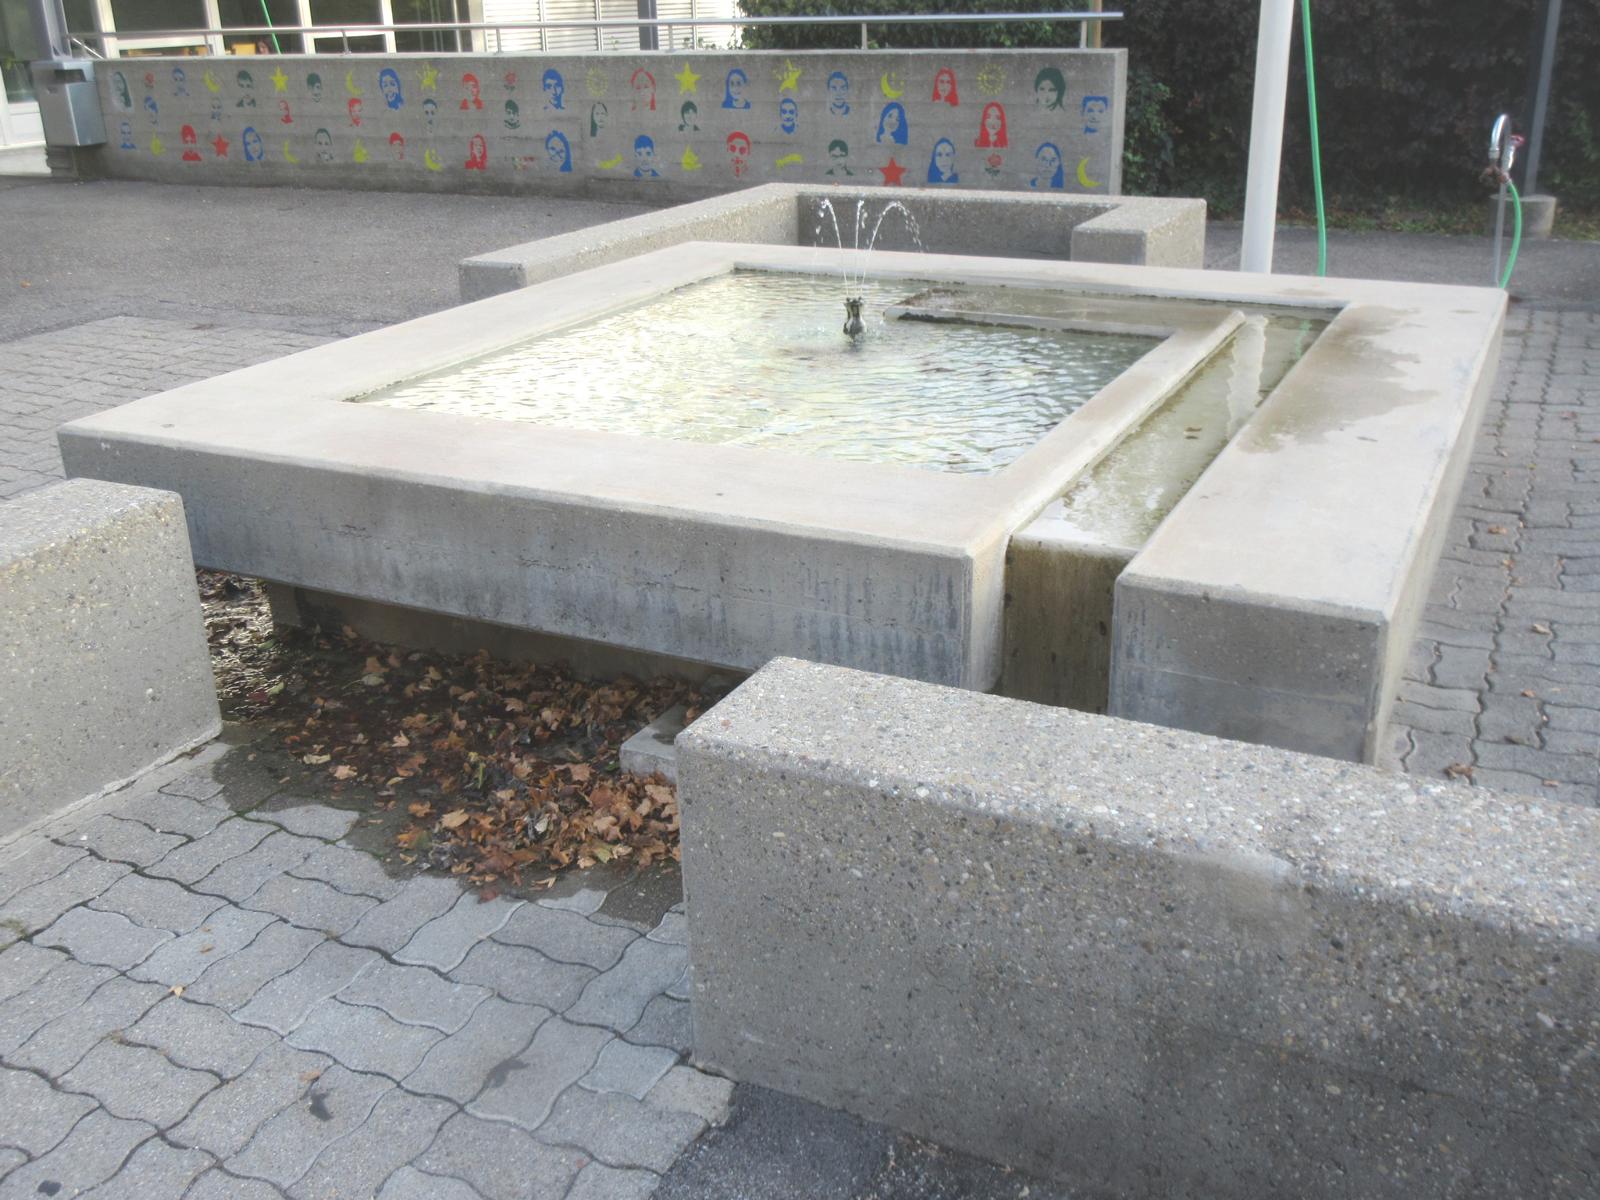 Schulzentrum Hinterbüel - Pausenplatz *** o.J. (1. Bauetappe 1955-59) *** Beton, buntes Mosaik am Beckenboden *** Messingspeier, dreiröhrig *** --